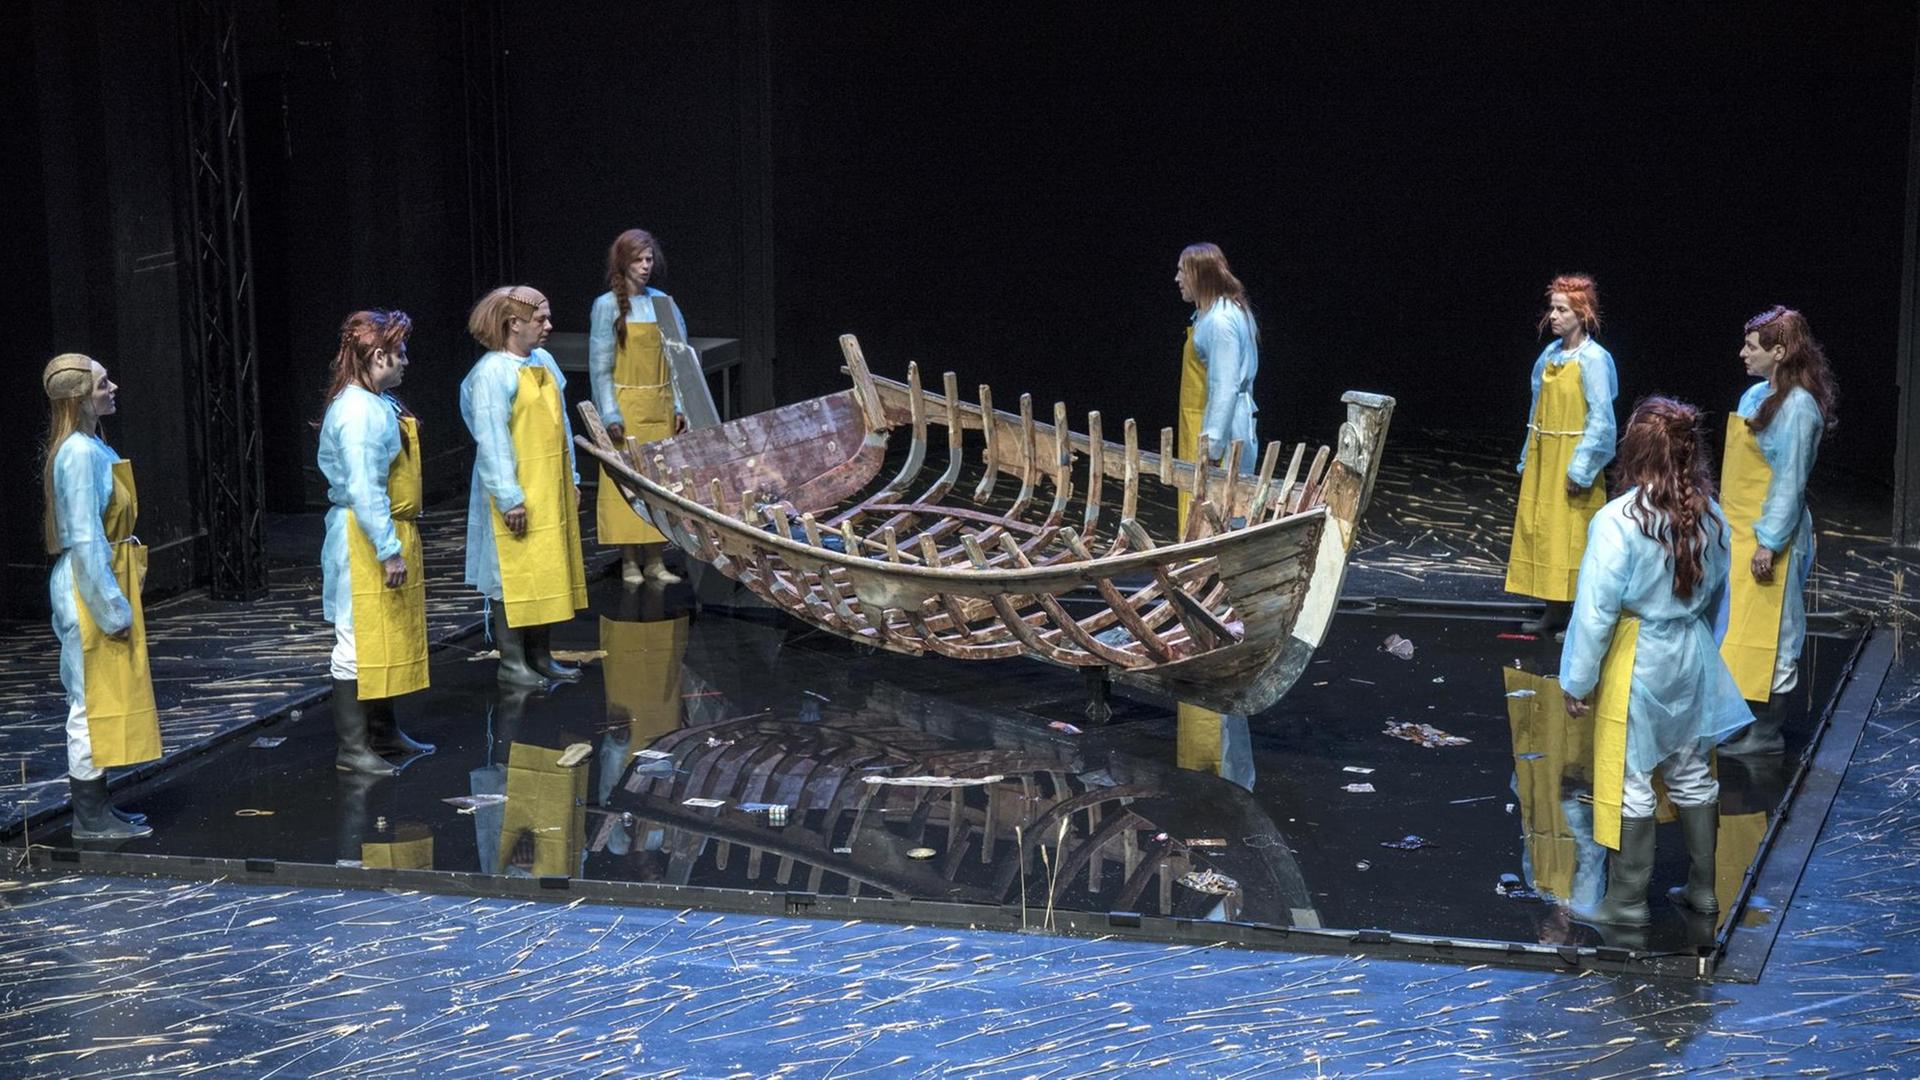 Ein Szenenbild des Theaterstücks "Boat Memory" von Roberto Ciulli zeigt das Gerippe eines Holzschiffes in der Mitte der Bühne. Daneben stehen links und rechts vereinzelt Menschen